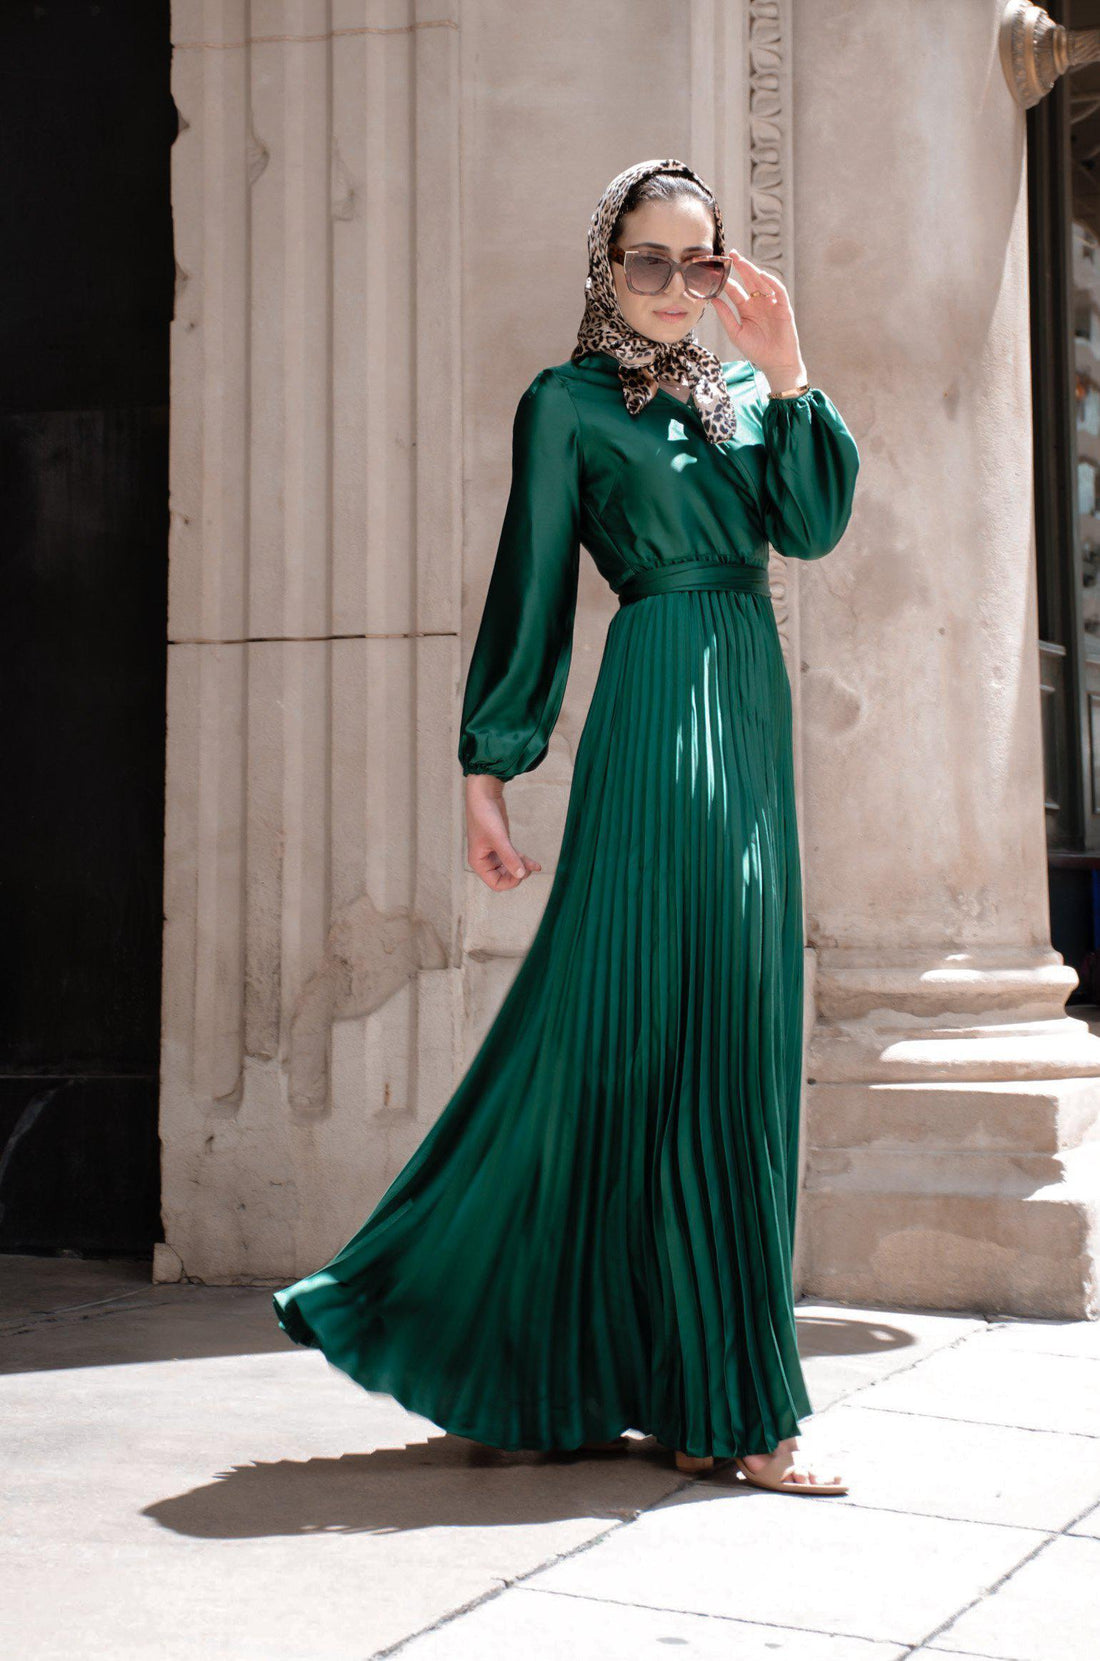 https://www.niswafashion.com/cdn/shop/products/ayla-pleated-satin-gown-emerald-niswa-fashion.jpg?v=1594355292&width=1100